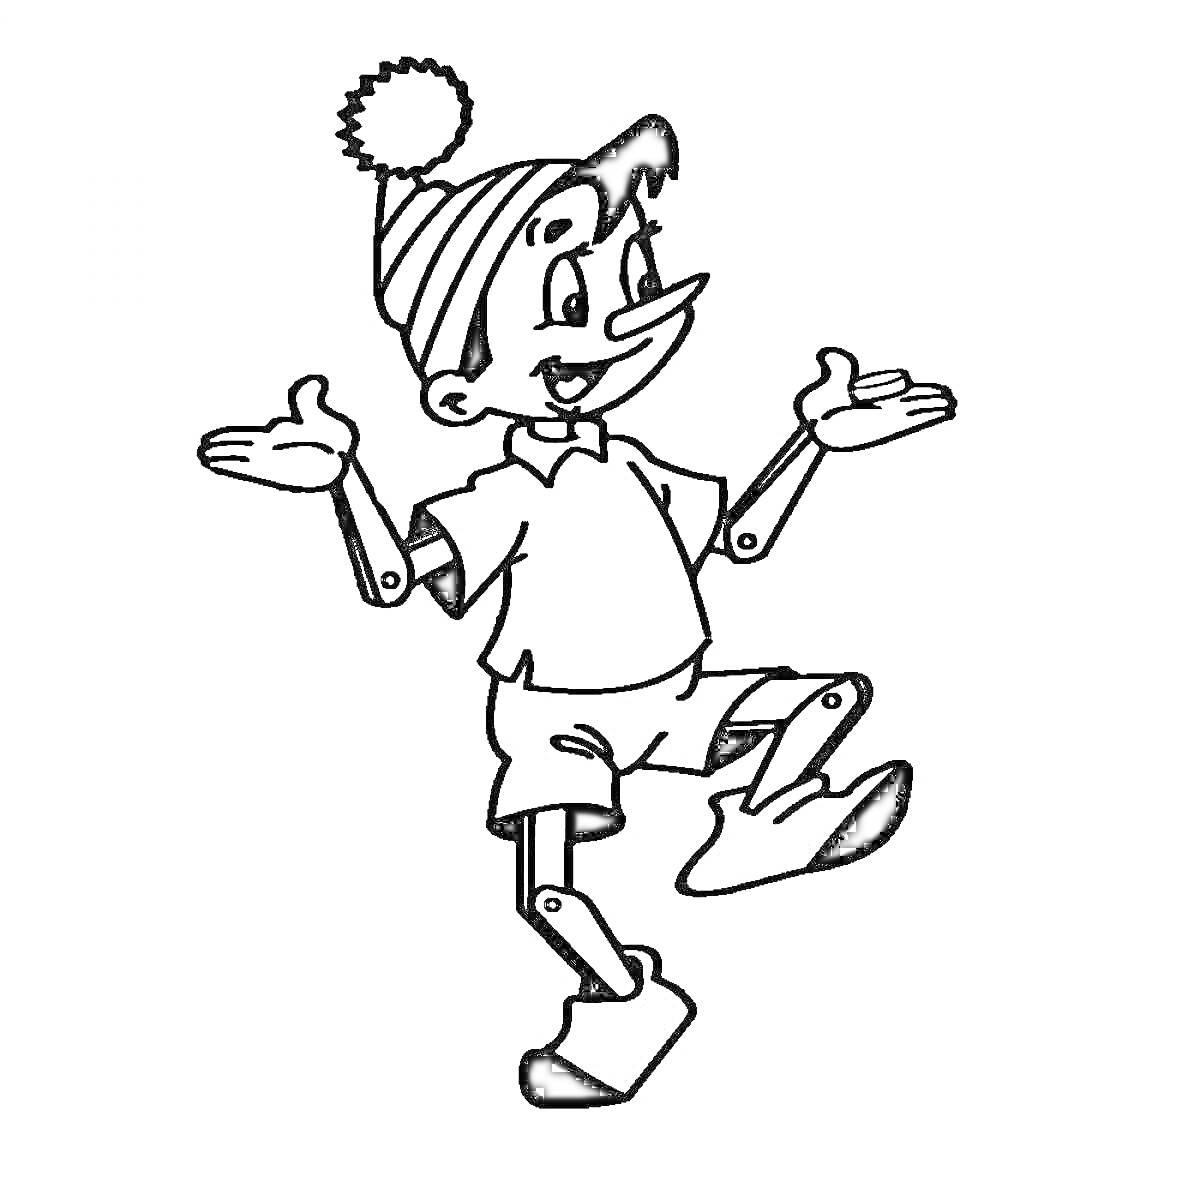 Раскраска Буратино в шапочке с помпоном, футболке и шортах, размахивает руками, одна нога поднята